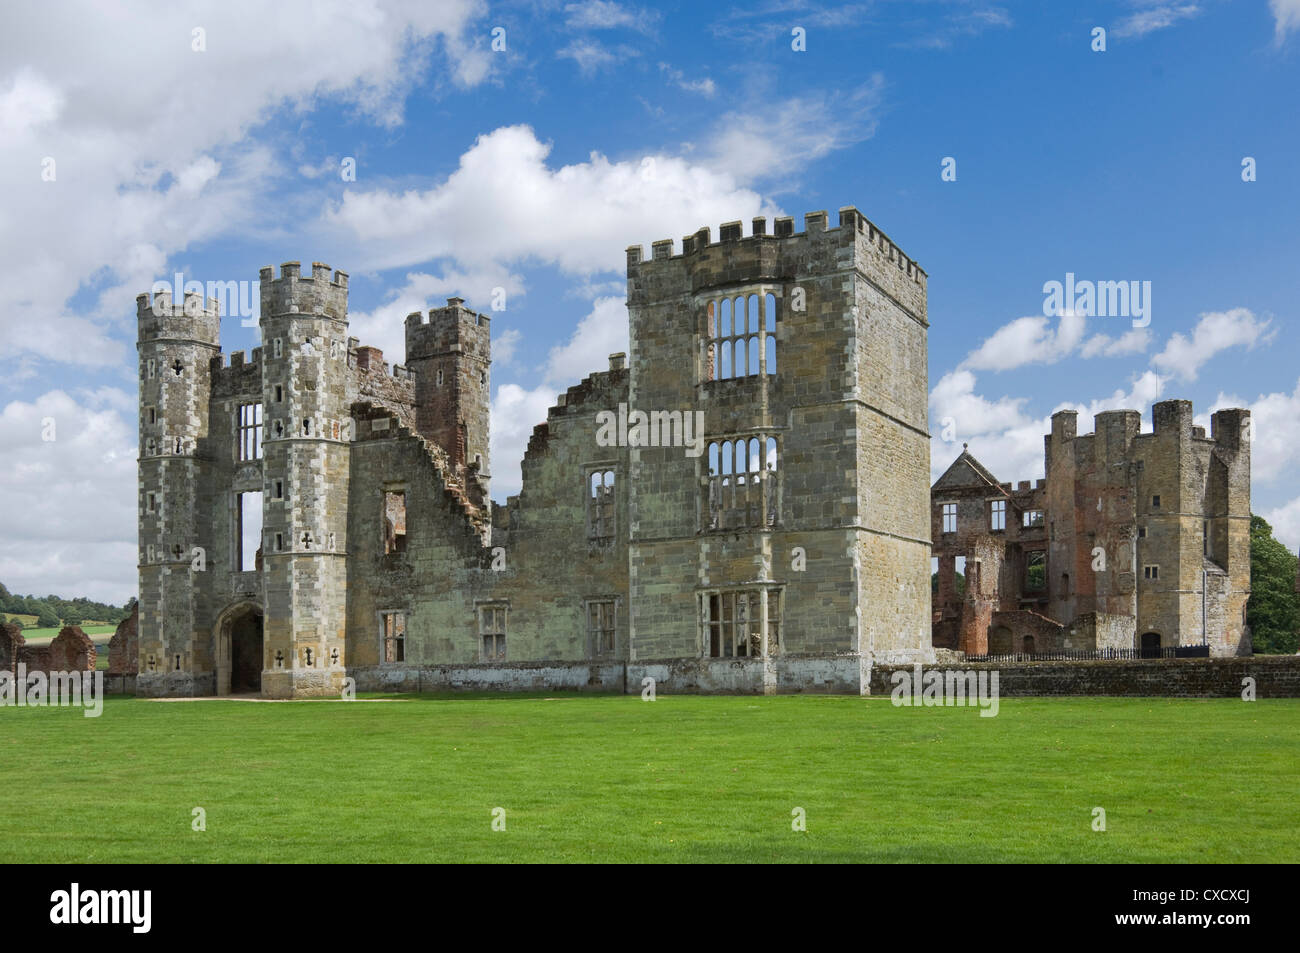 Cowdray château, datant du 16e siècle, à Midhurst, West Sussex, Angleterre, Royaume-Uni, Europe Banque D'Images